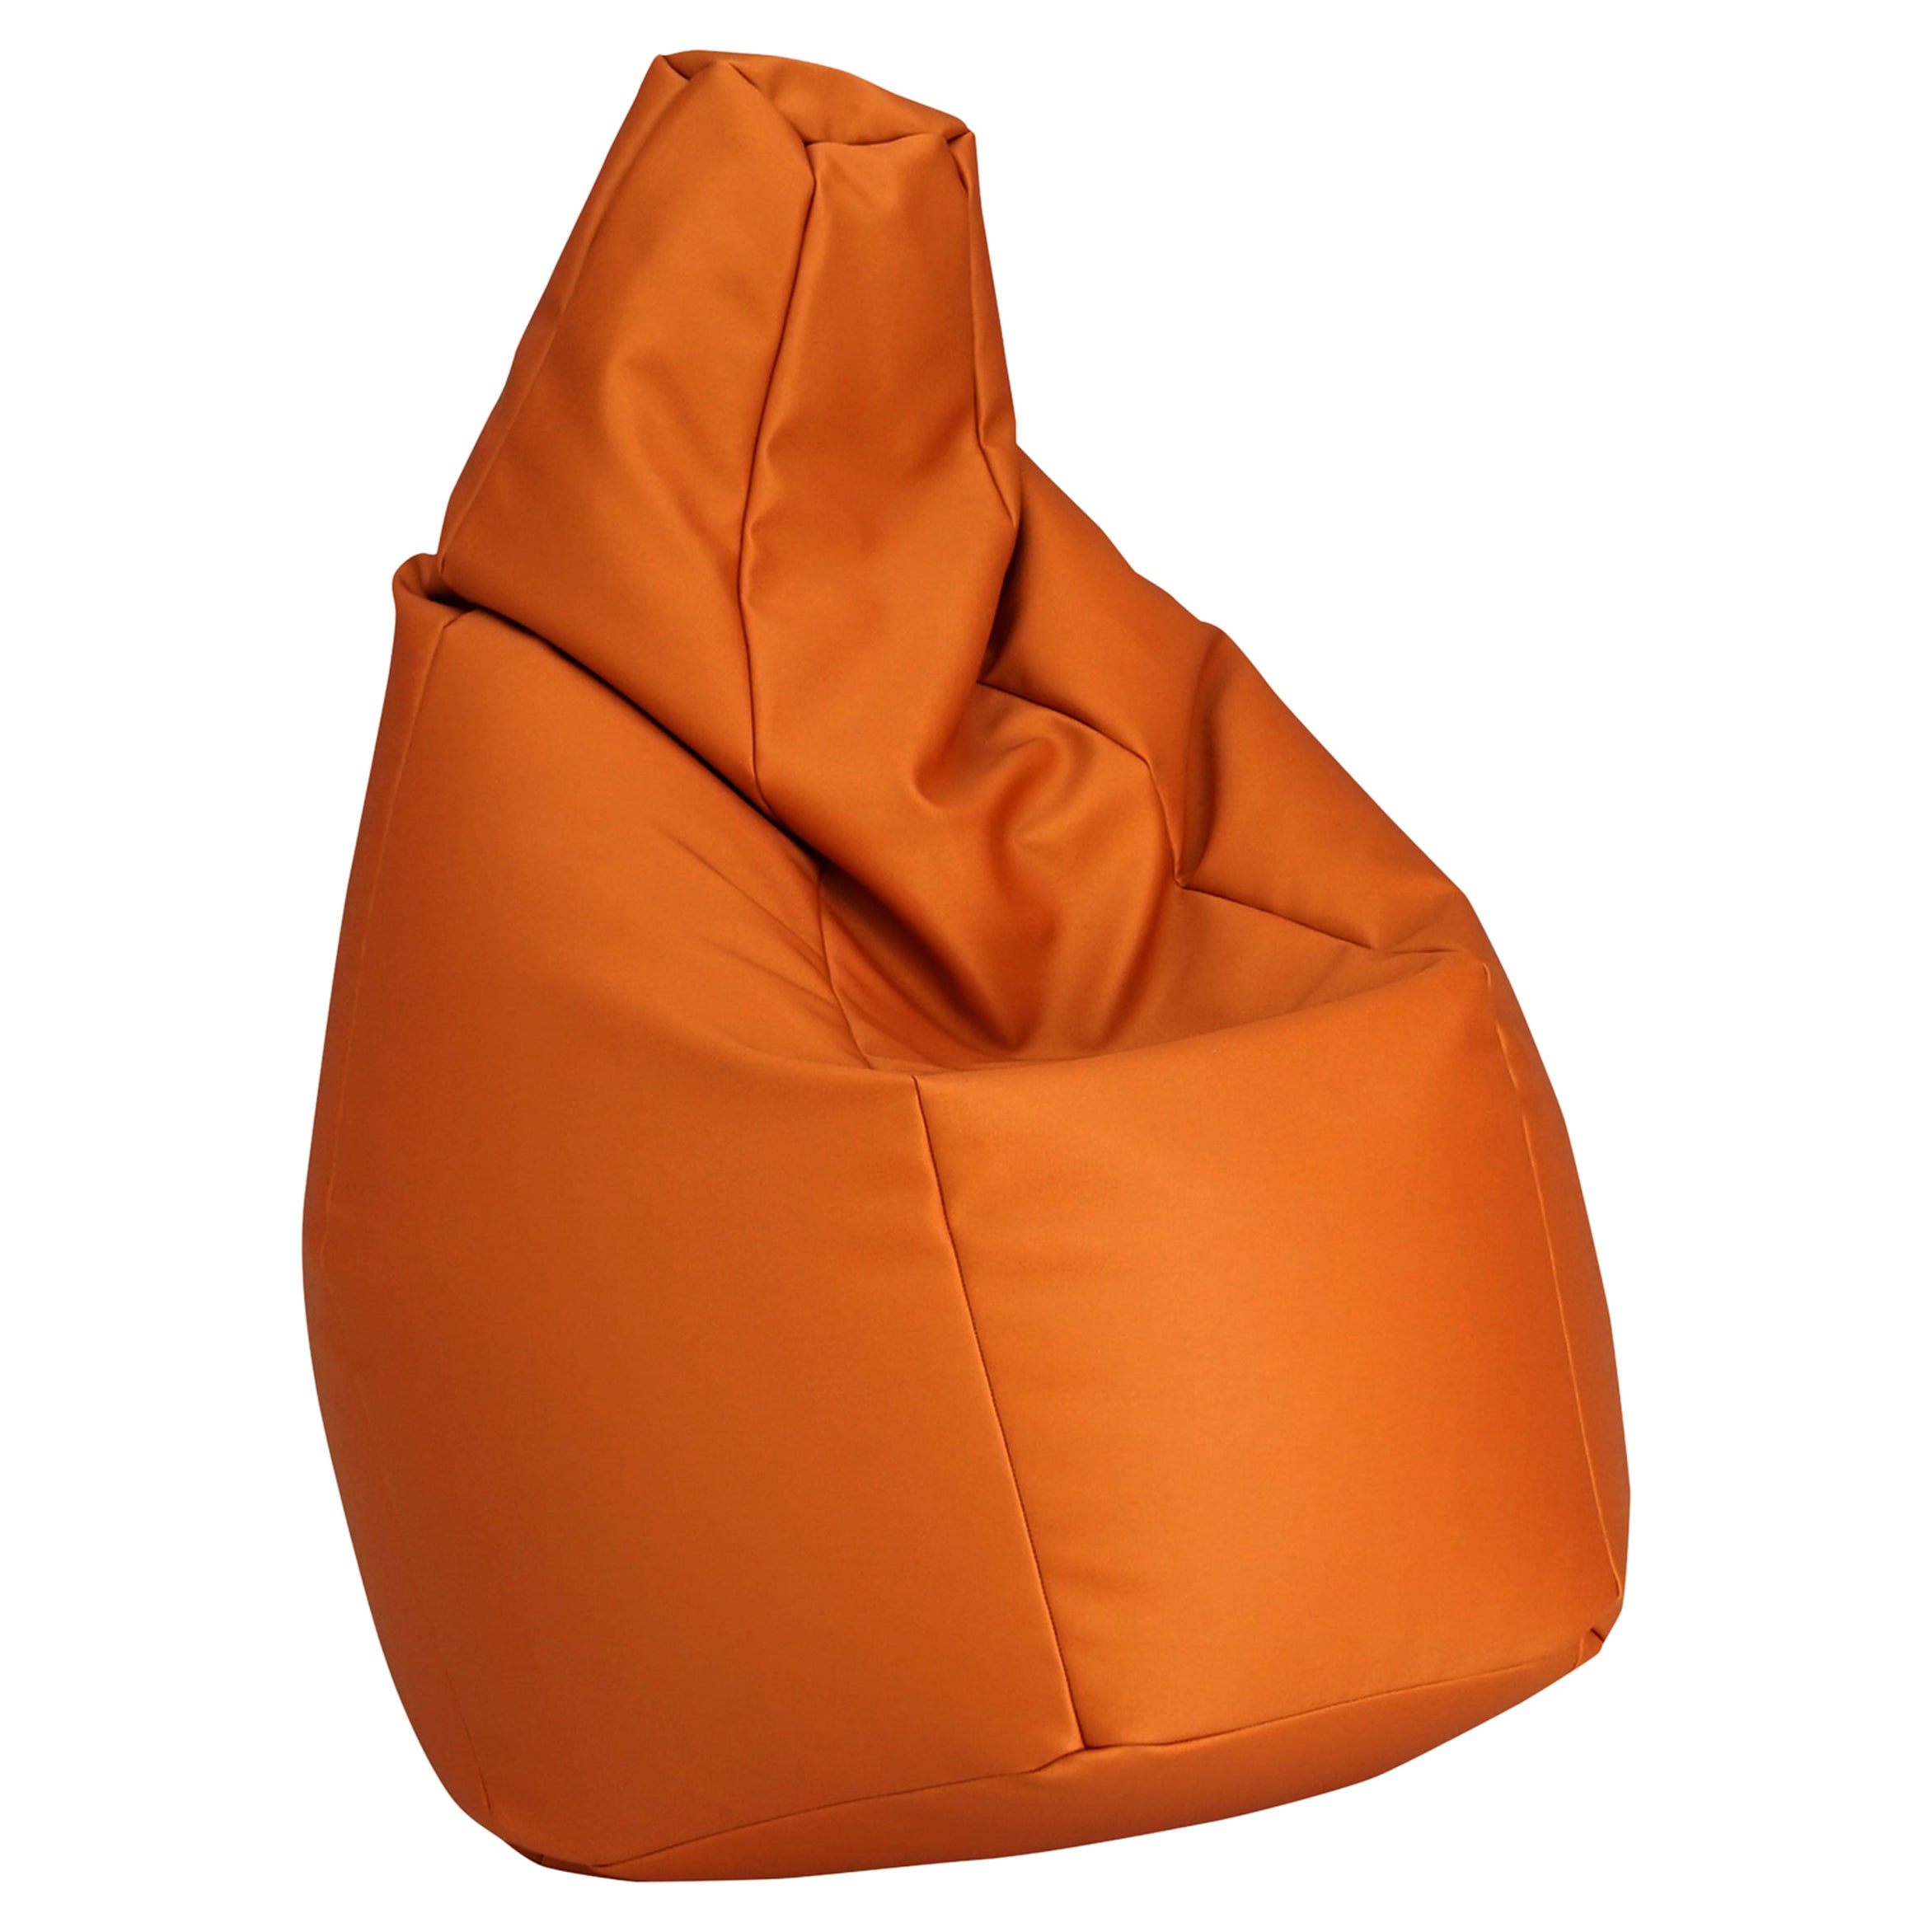 Zanotta Small Sacco in Orange Vip Fabric by Gatti, Paolini, Teodoro For Sale